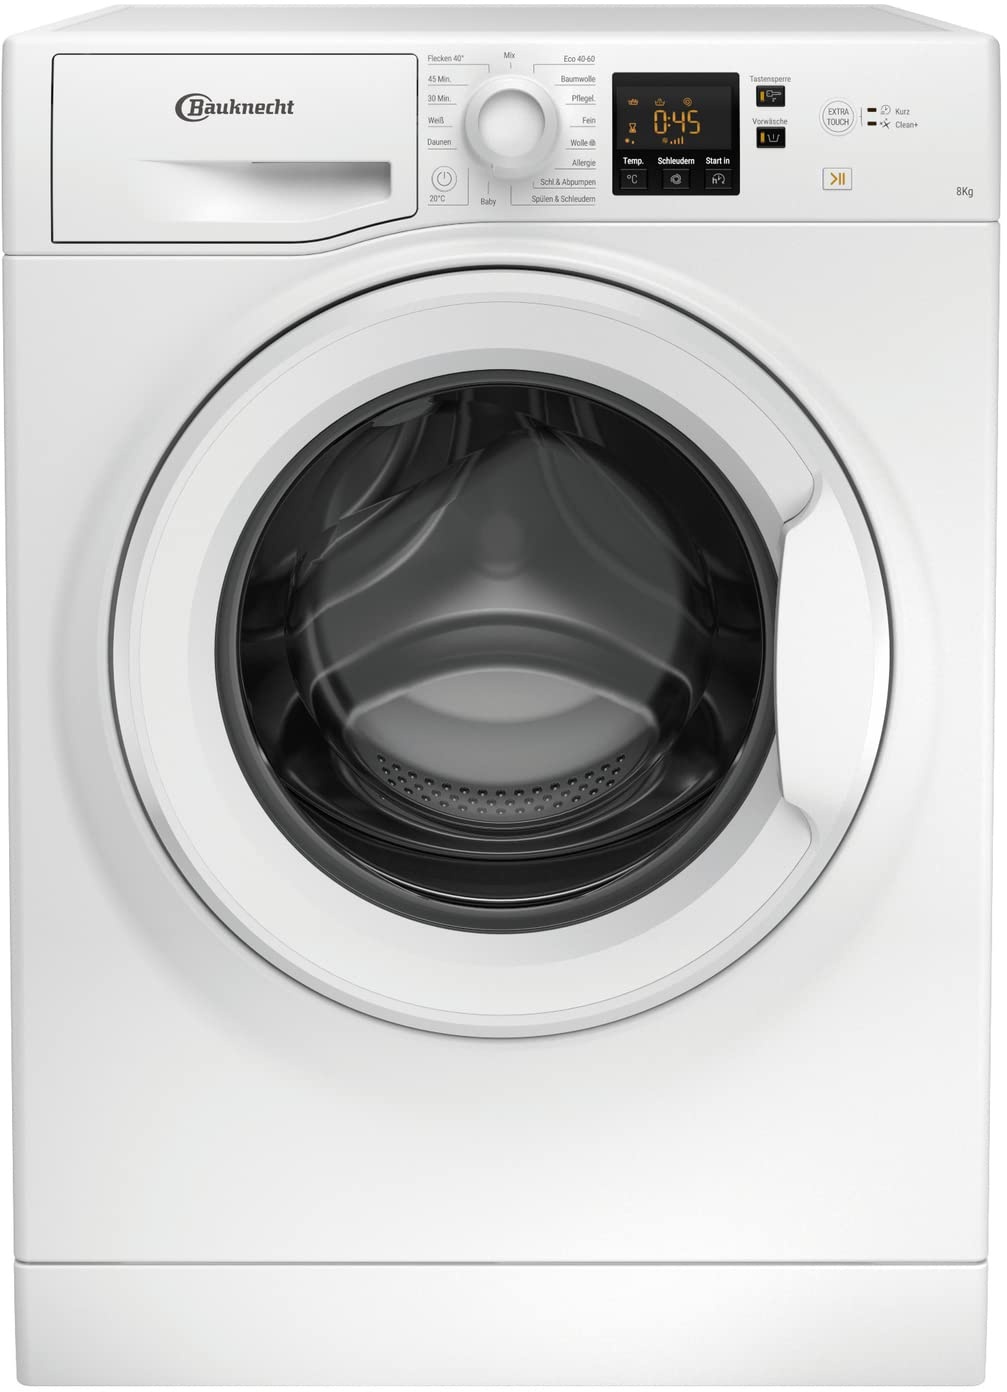 Bauknecht BPW 814 A Waschmaschine Frontlader/ 8kg/ kraftvolle Fleckenentfernung/Clean Plus/Kurz 45' / Anti-Allergie Plus/Mengenautomatik/Option Extra Touch, White